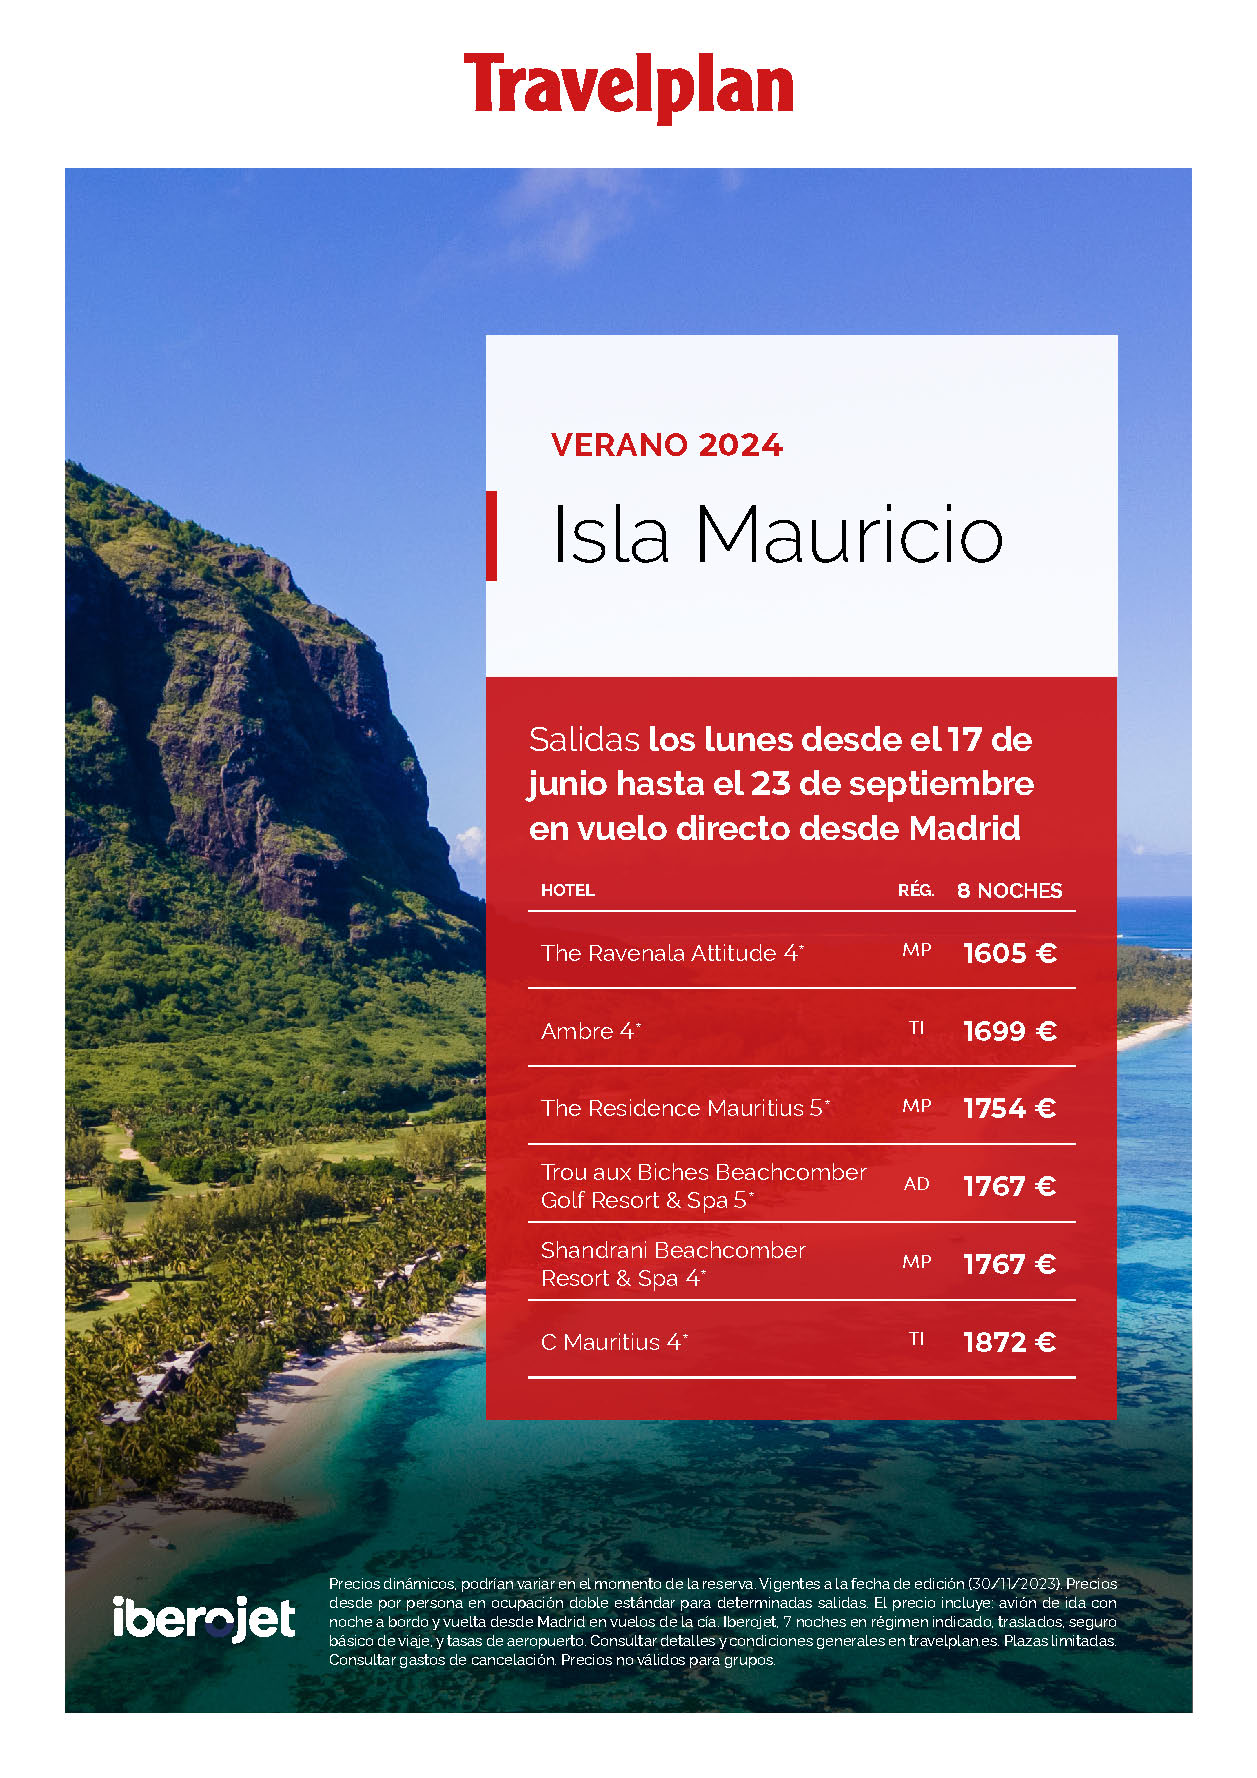 Oferta Travelplan Estancia en Isla Mauricio 9 dias salidas de Junio a Septiembre 2024 en vuelo directo desde Madrid con Iberojet